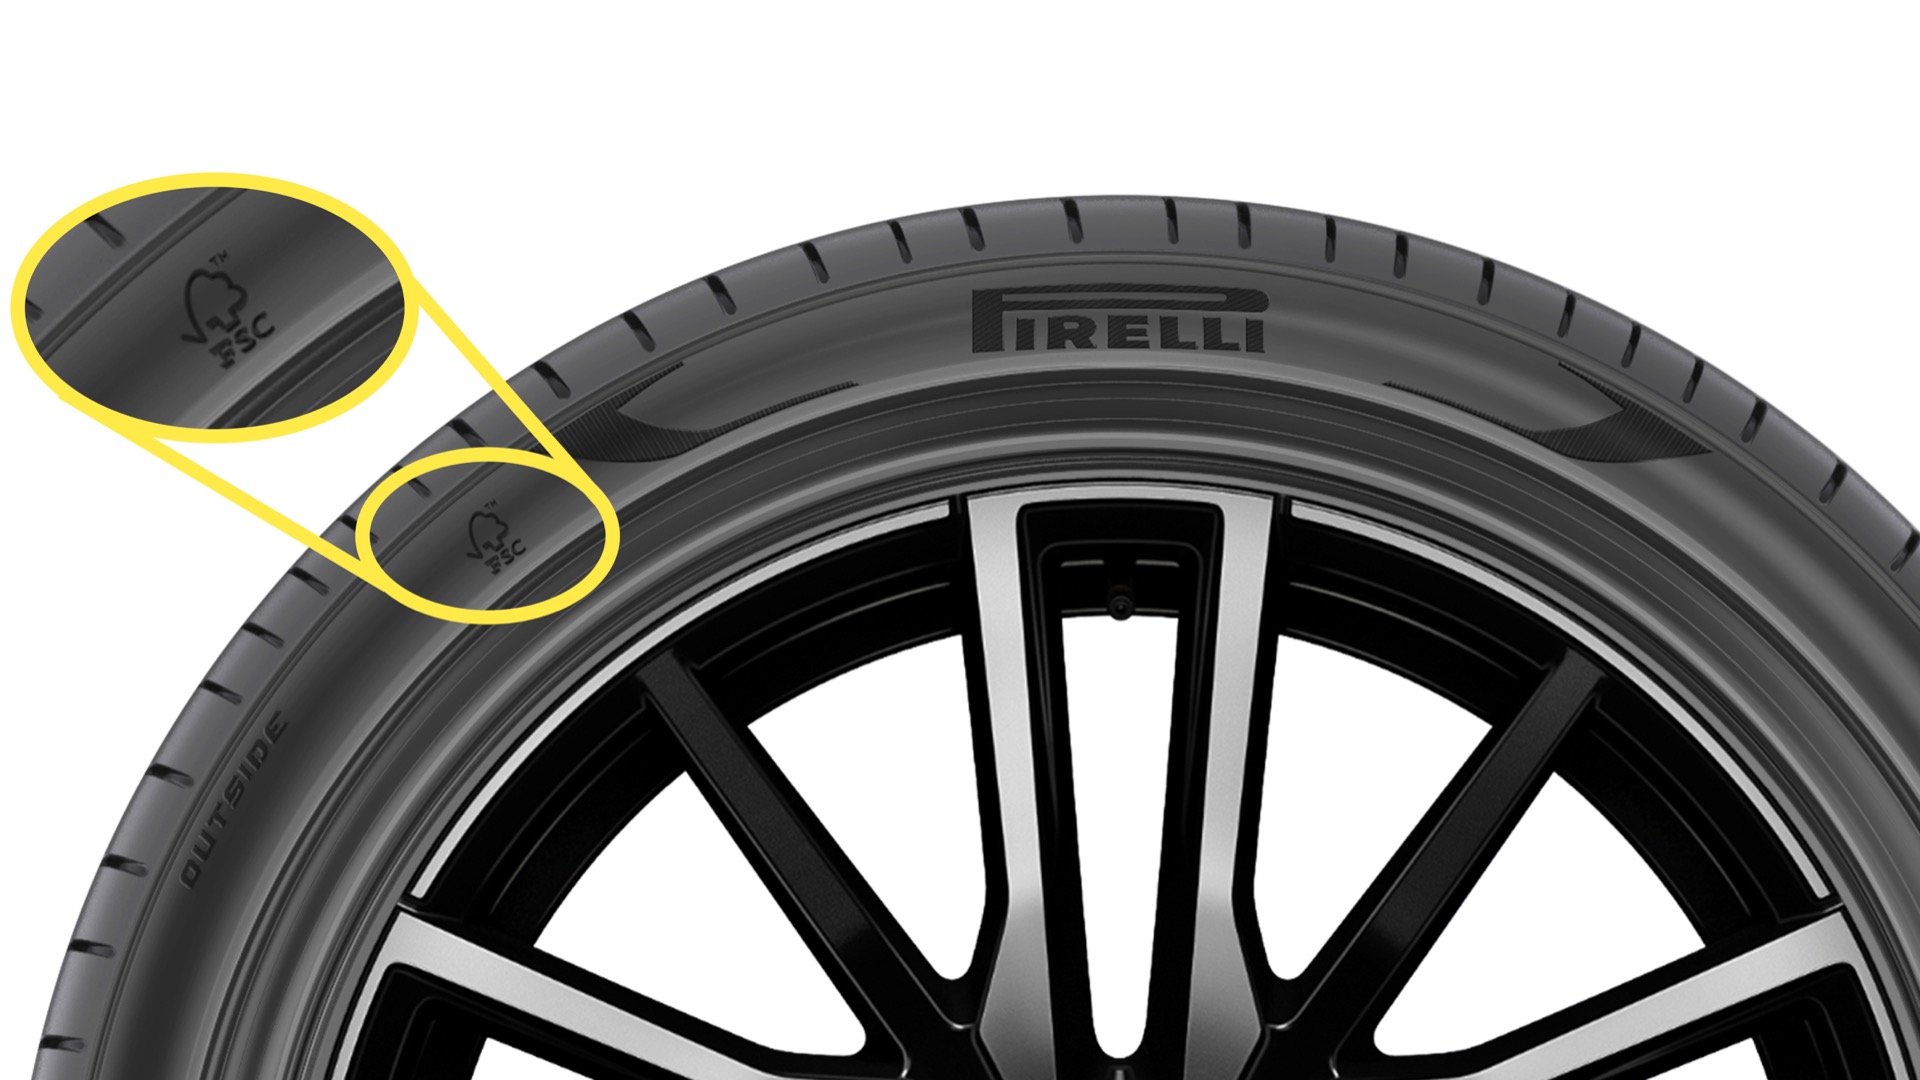 Fsc Certified Pirelli P Zero Tire For Bmw X5 Xdrive45e 100792092 H